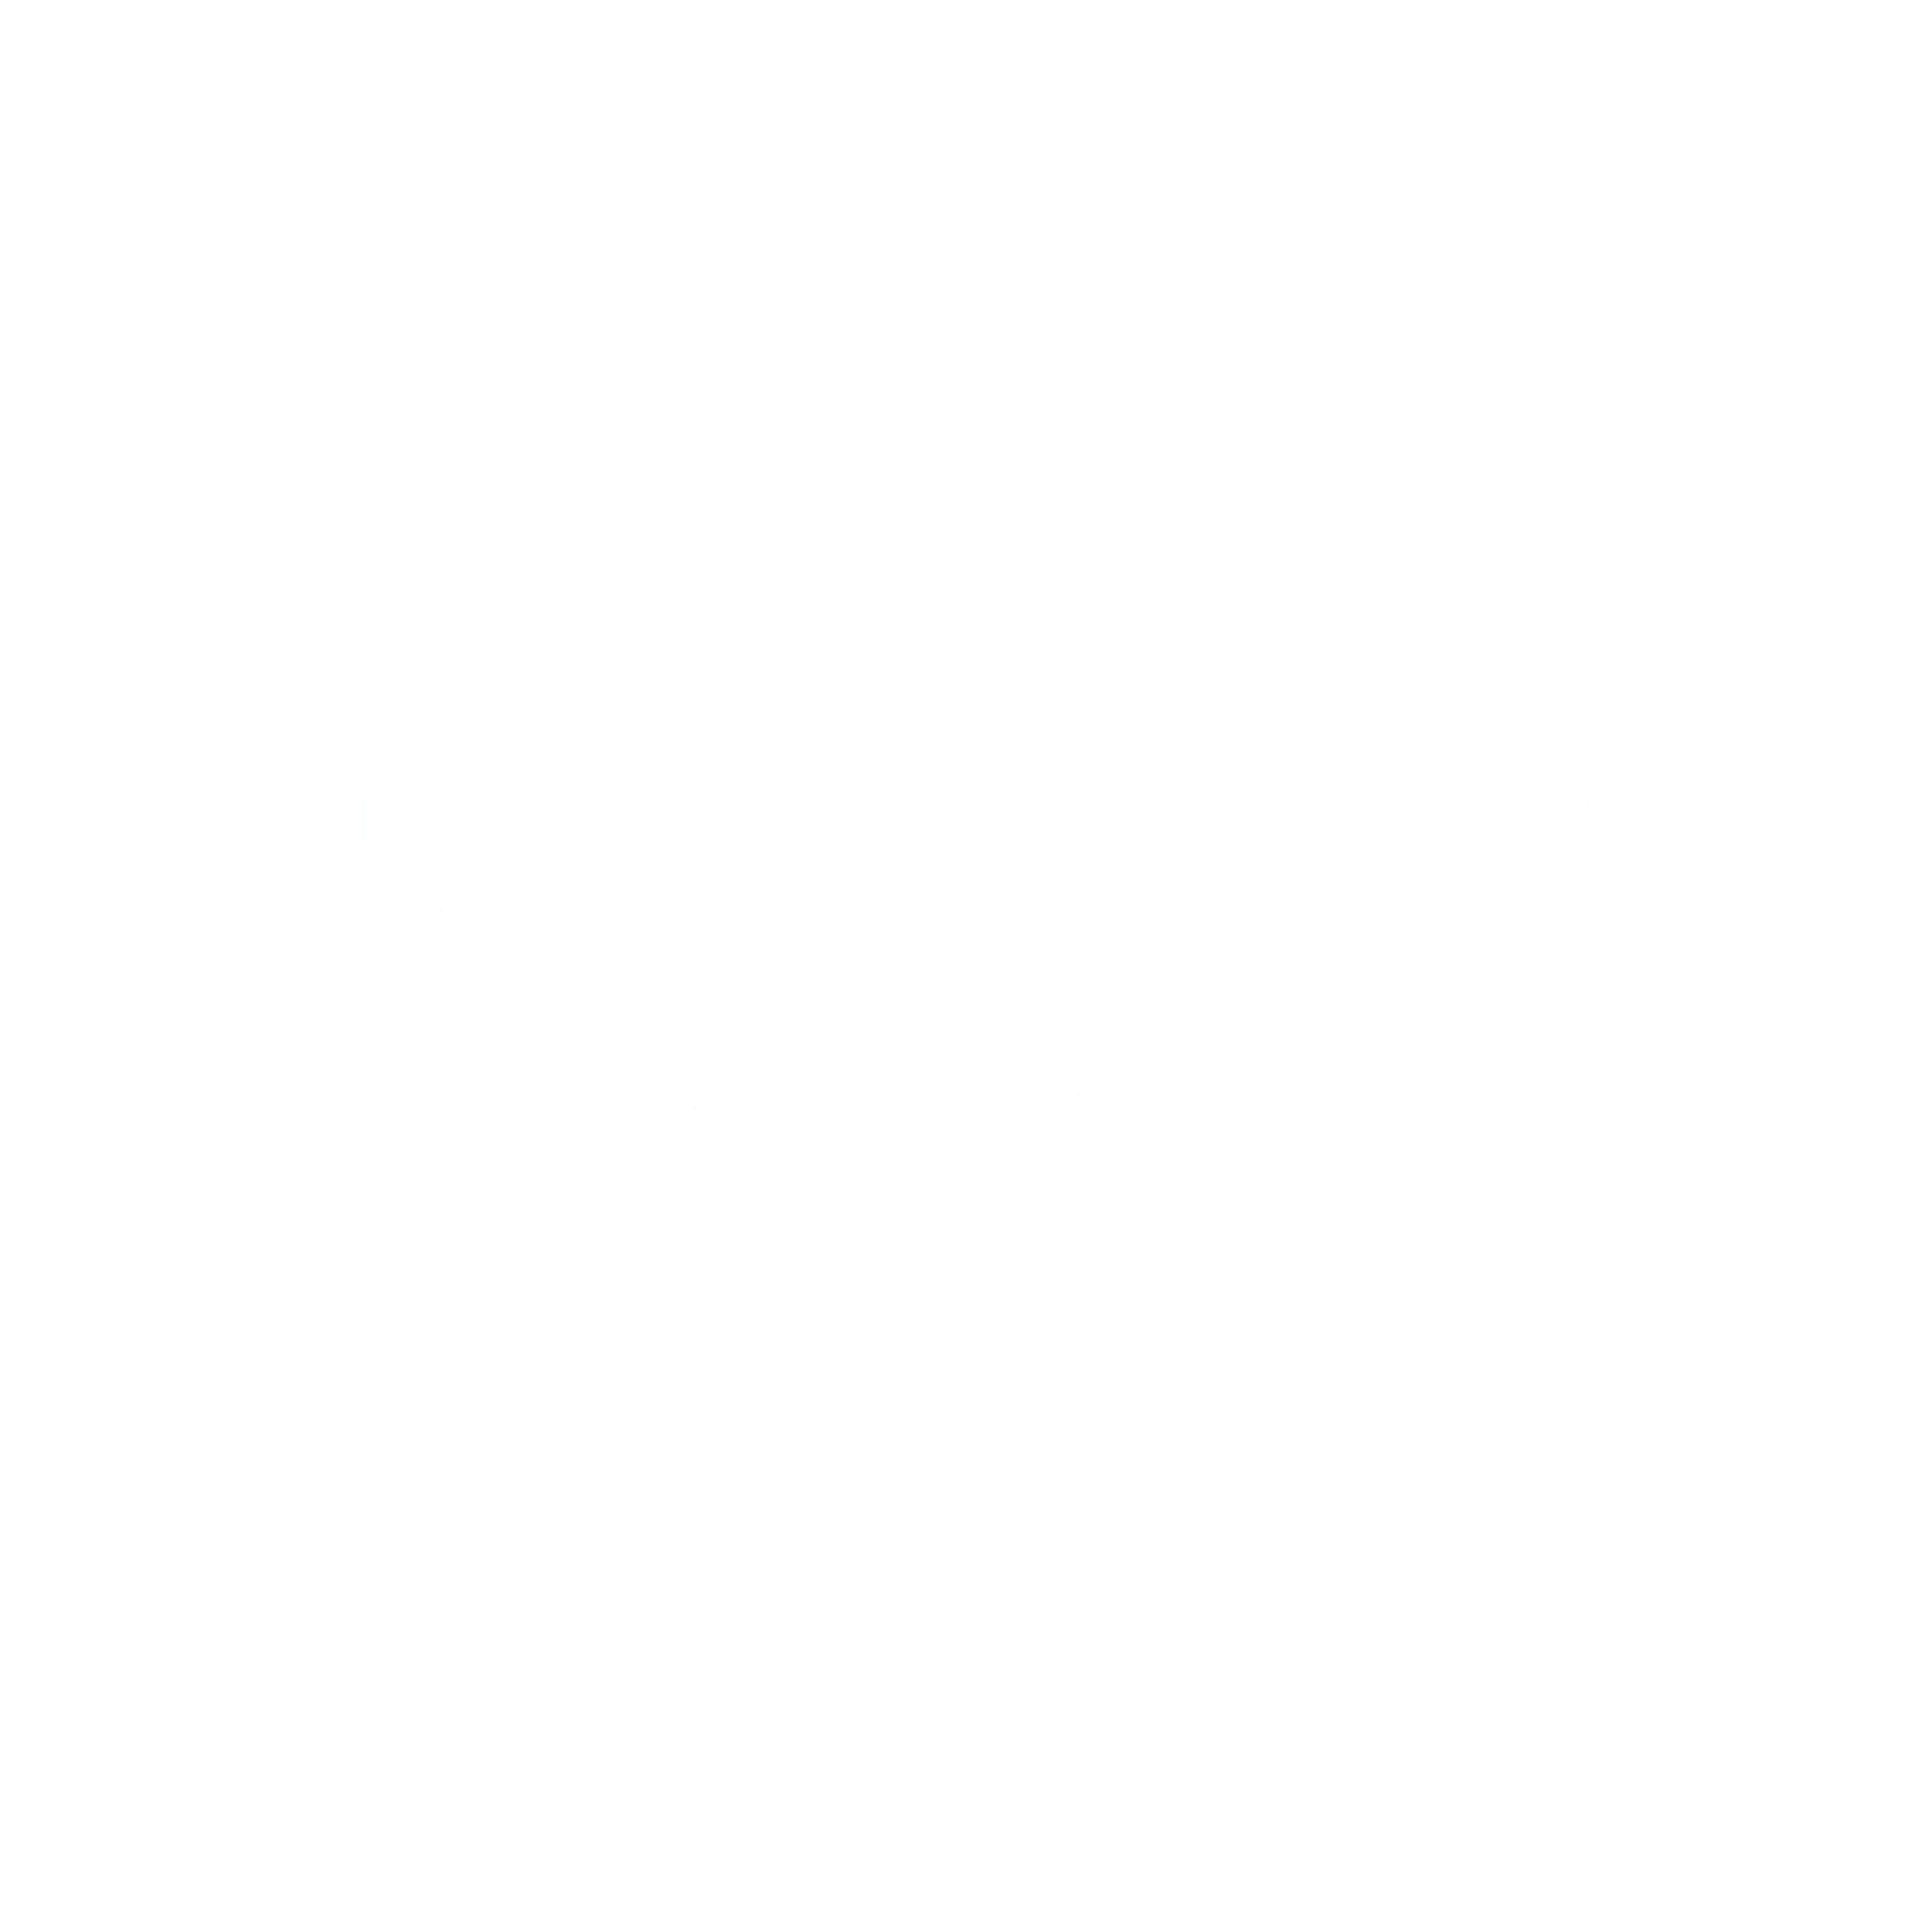 Myobrace